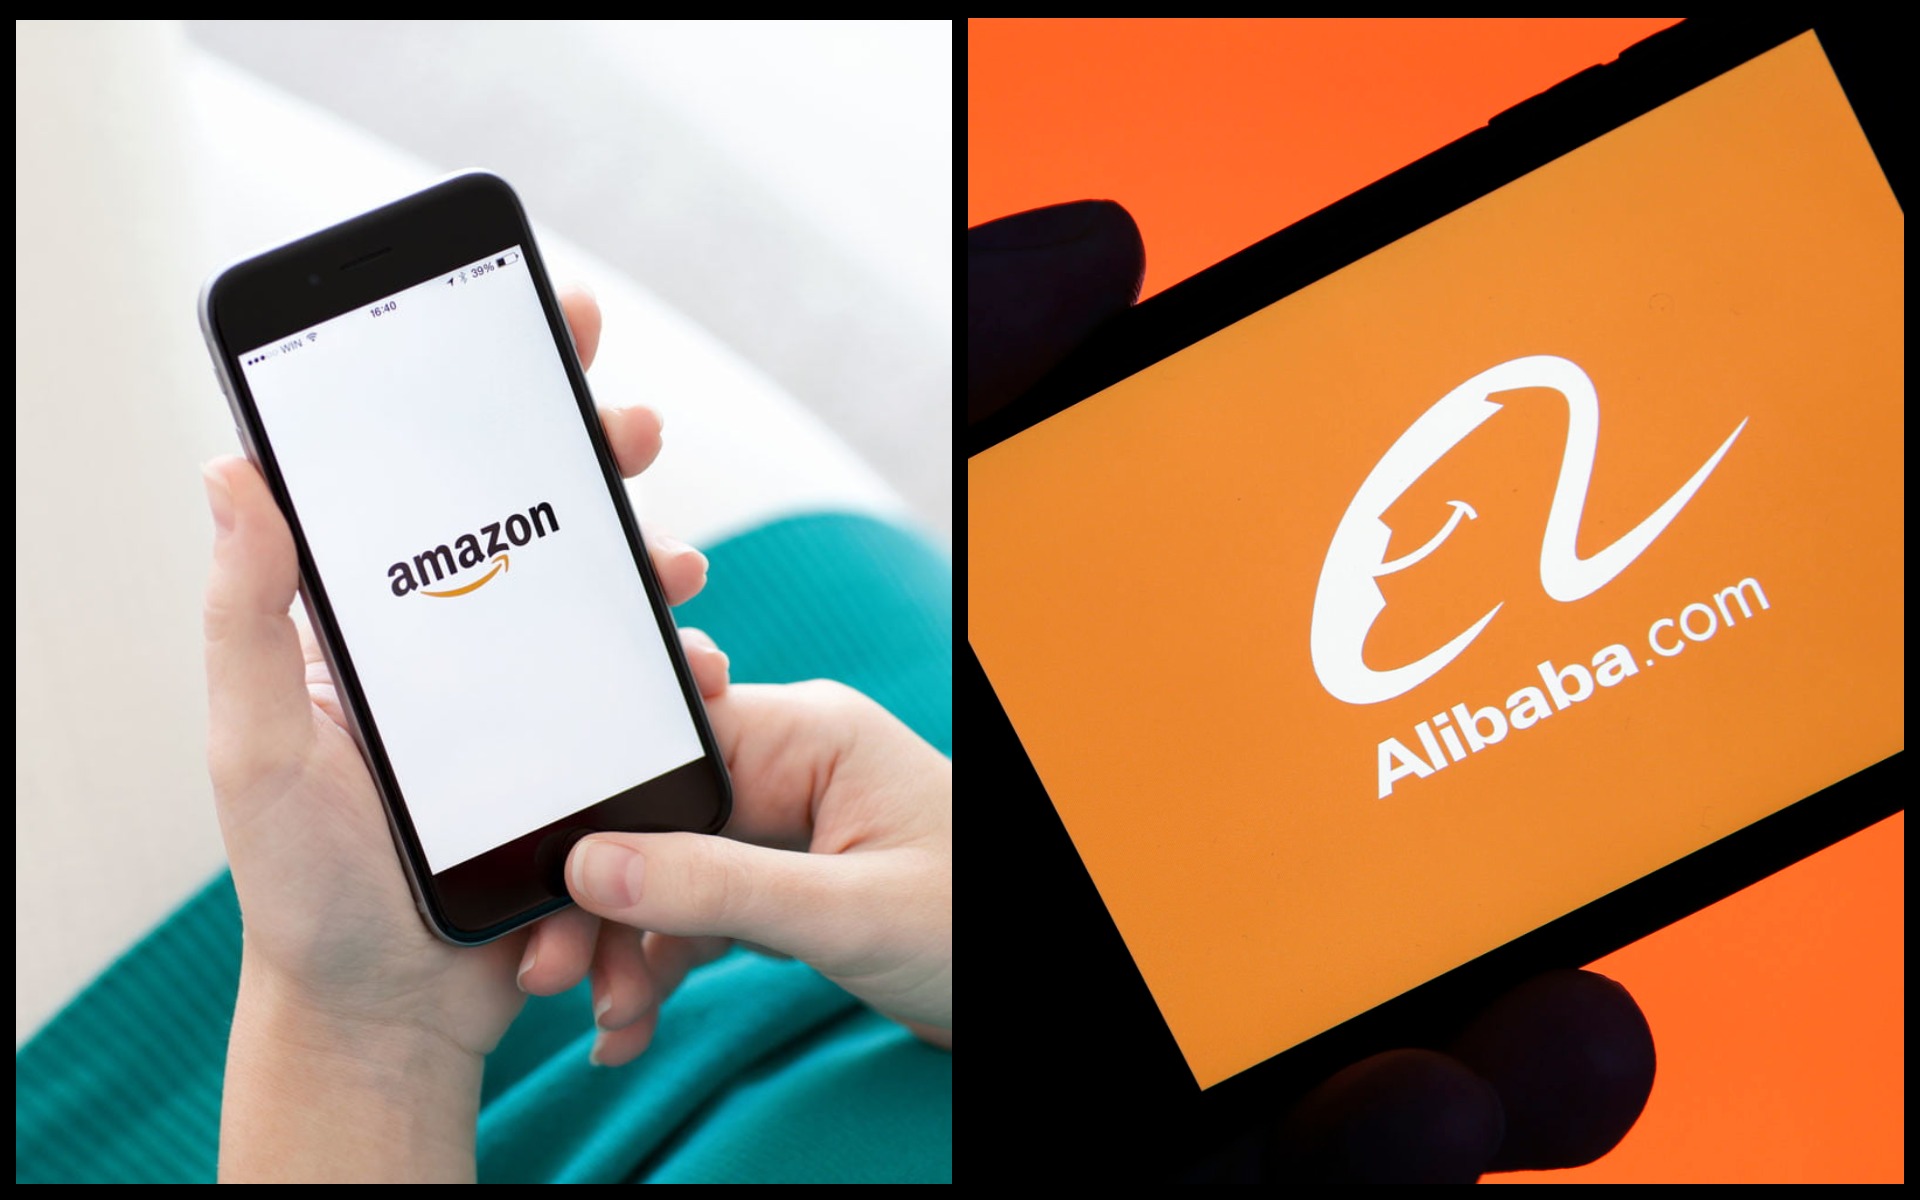 Amazon vs Alibaba: Battle of the Online Giants